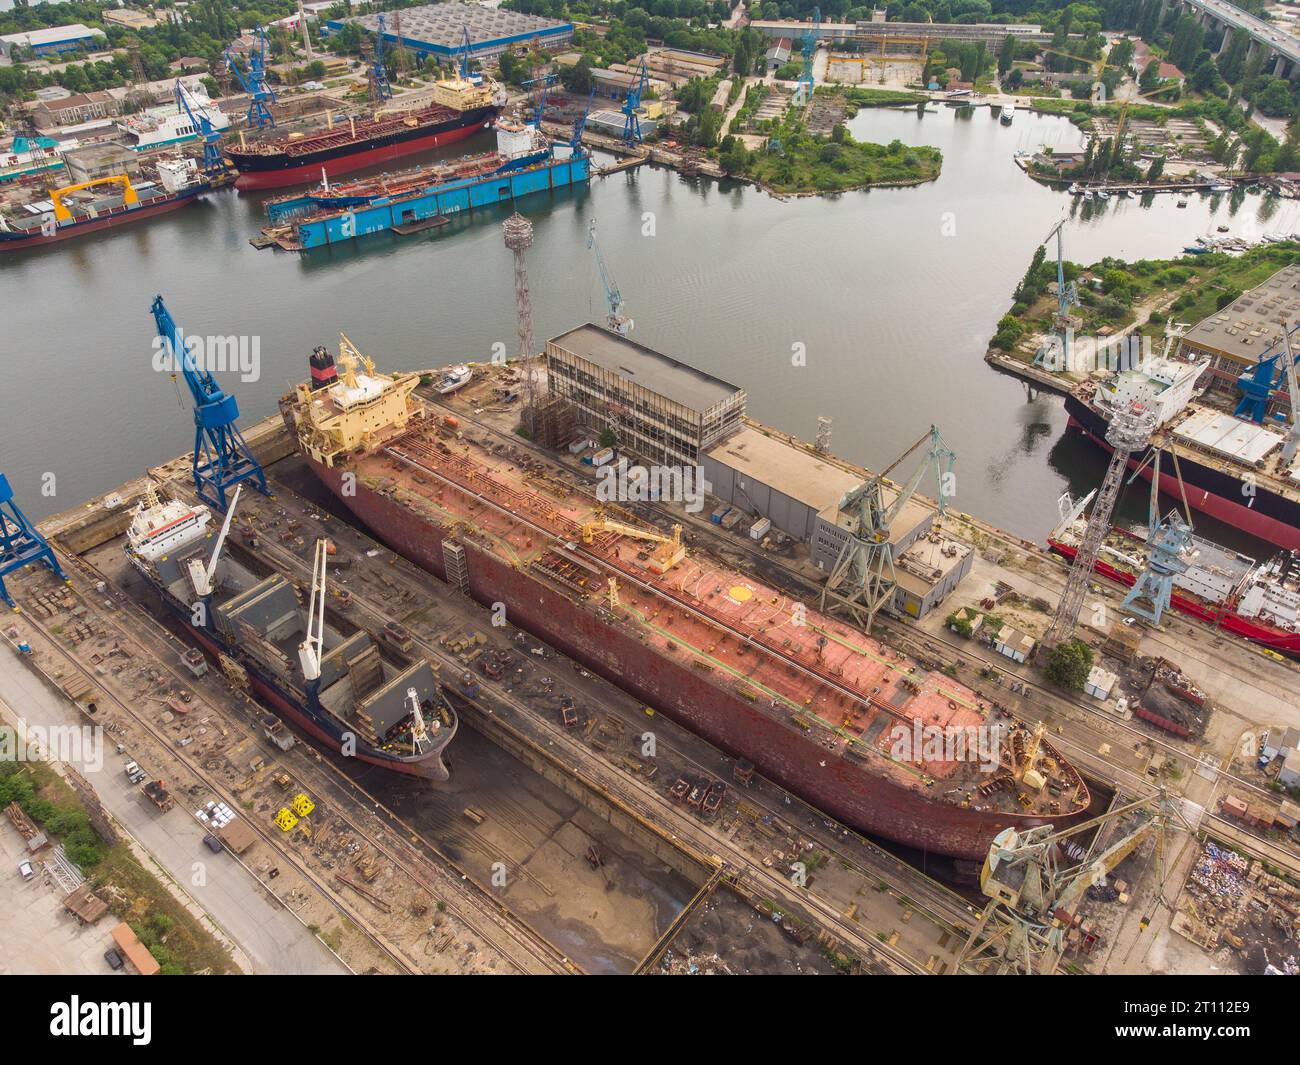 Tanker vessel repair in dry dock Shipyard, aerial top view Stock Photo